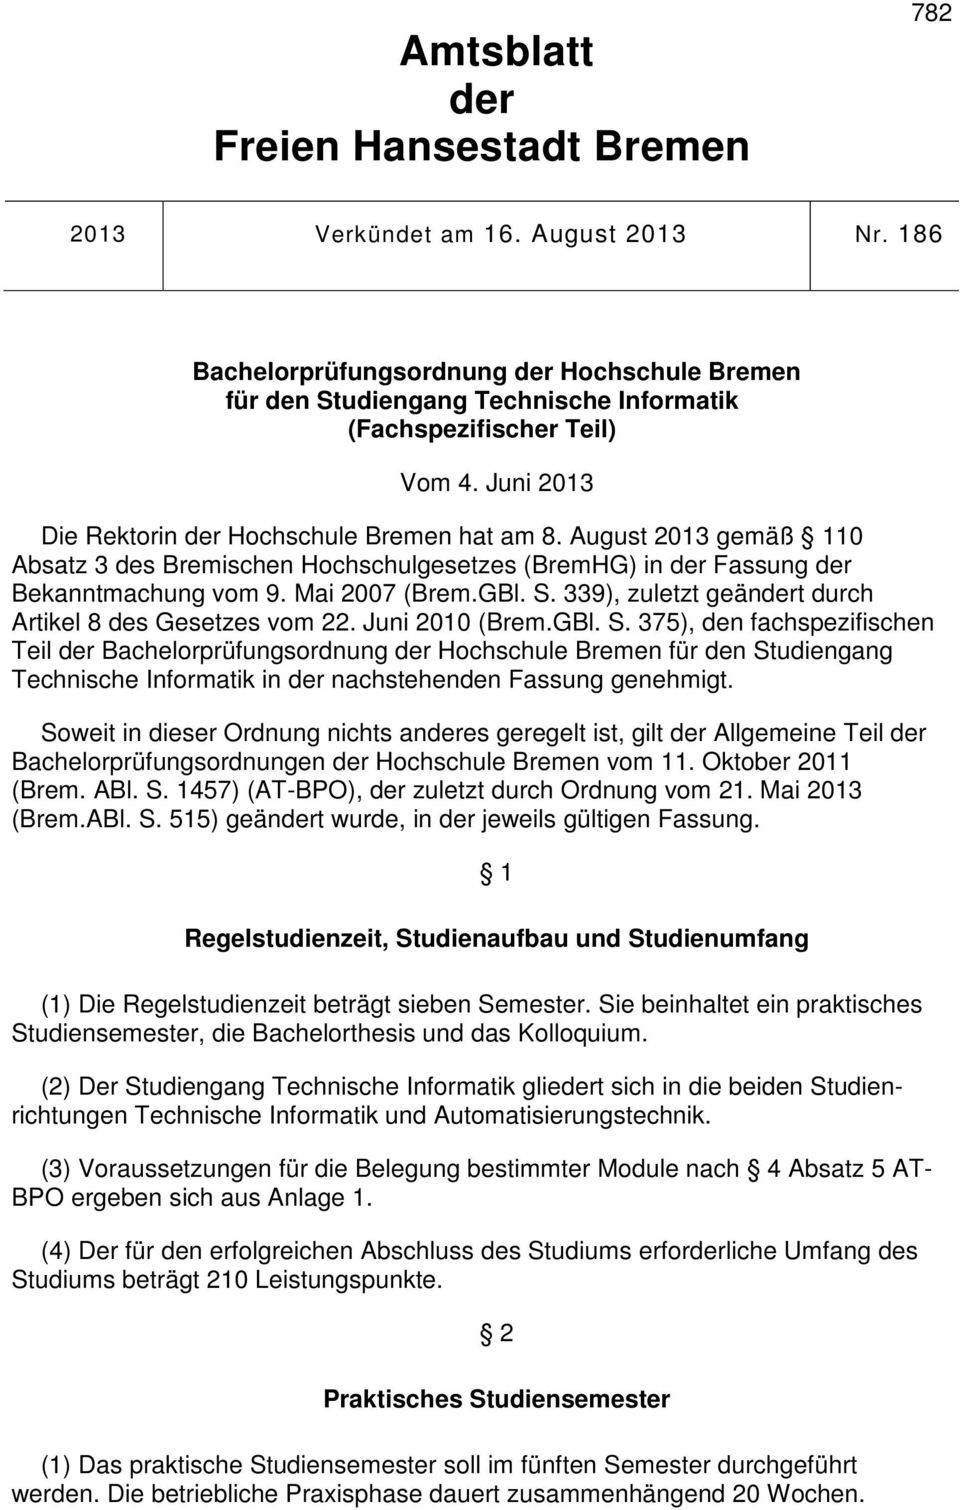 August 2013 gemäß 110 Absatz 3 des Bremischen Hochschulgesetzes (BremHG) in der Fassung der Bekanntmachung vom 9. Mai 2007 (Brem.GBl. S. 339), zuletzt geändert durch Artikel 8 des Gesetzes vom 22.